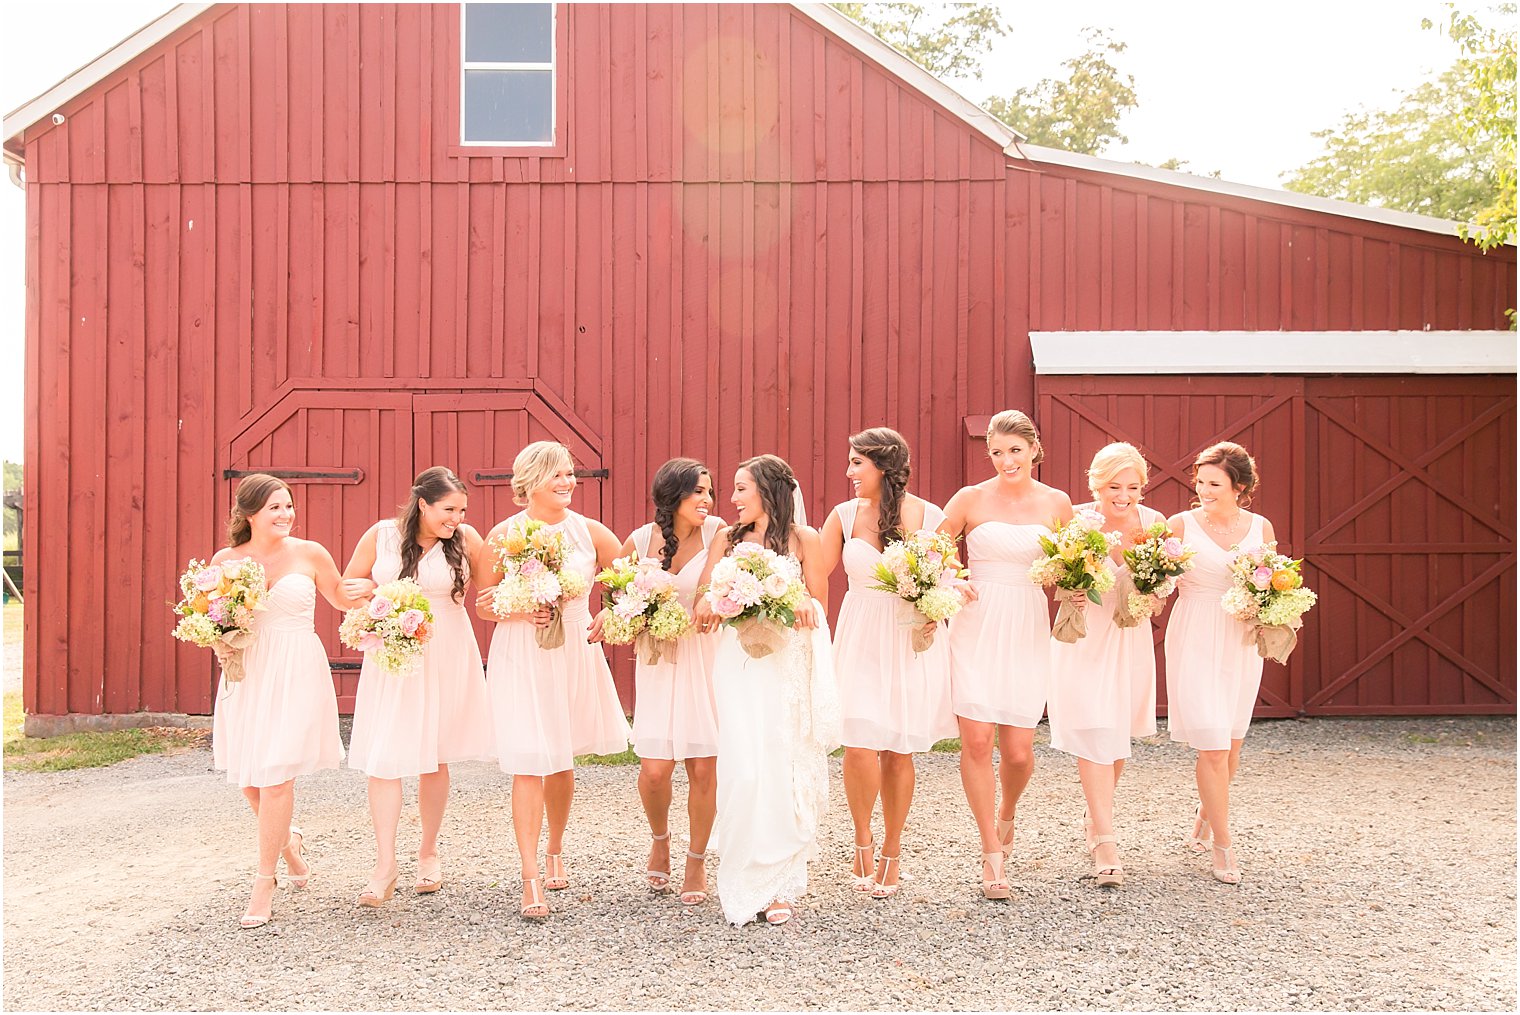 Bridal party at Stone Rows Farm | Photo by Idalia Photography